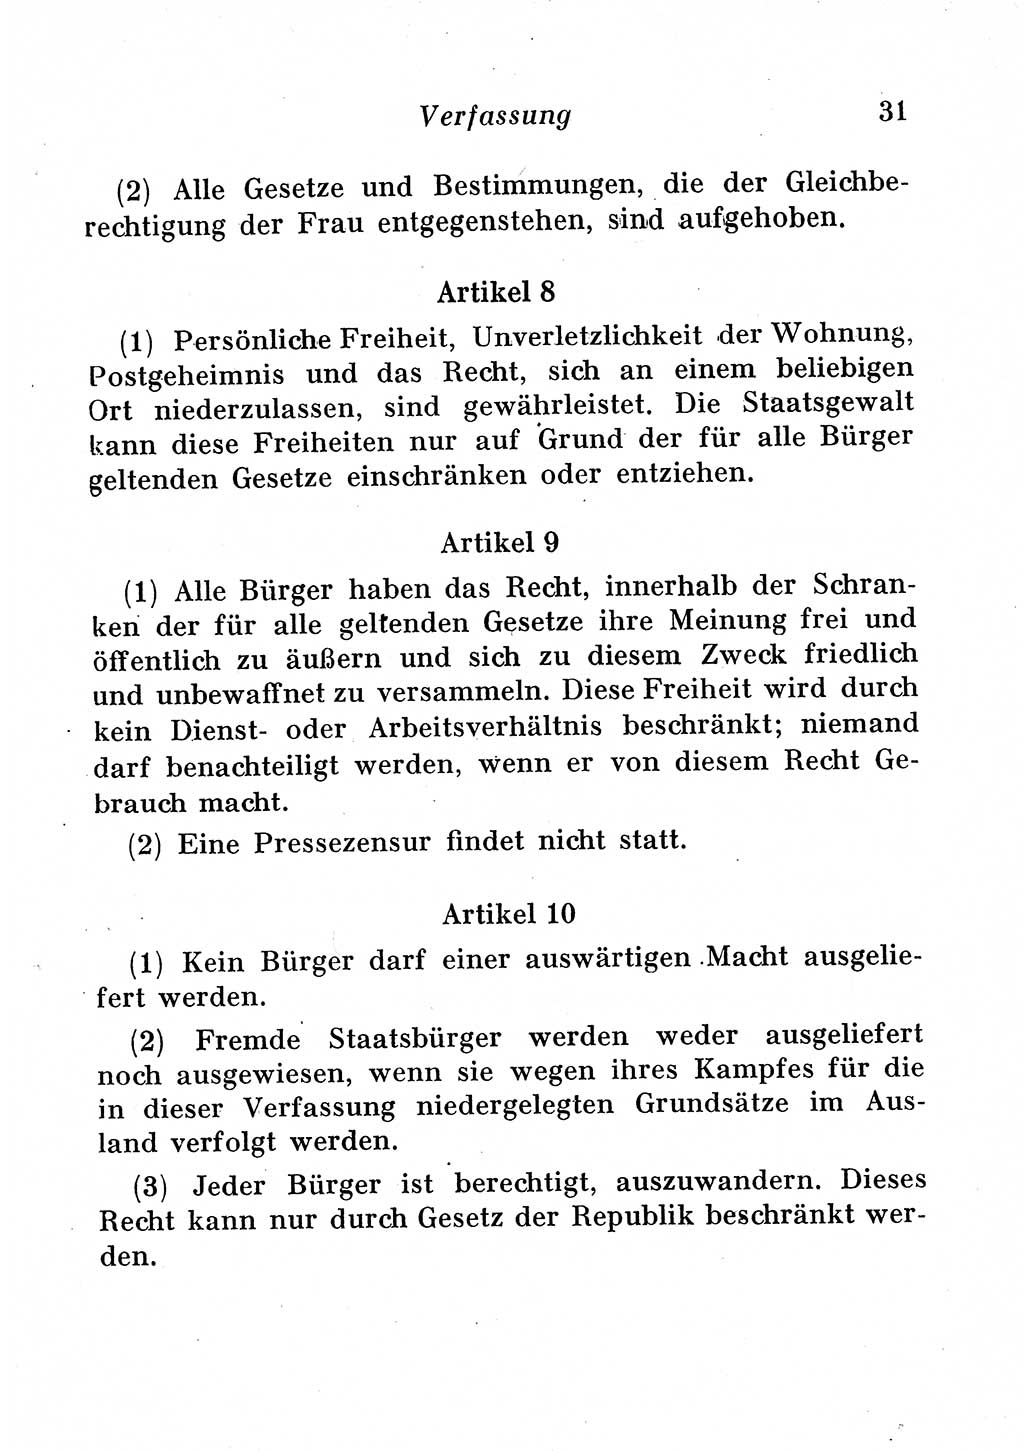 Staats- und verwaltungsrechtliche Gesetze der Deutschen Demokratischen Republik (DDR) 1958, Seite 31 (StVerwR Ges. DDR 1958, S. 31)